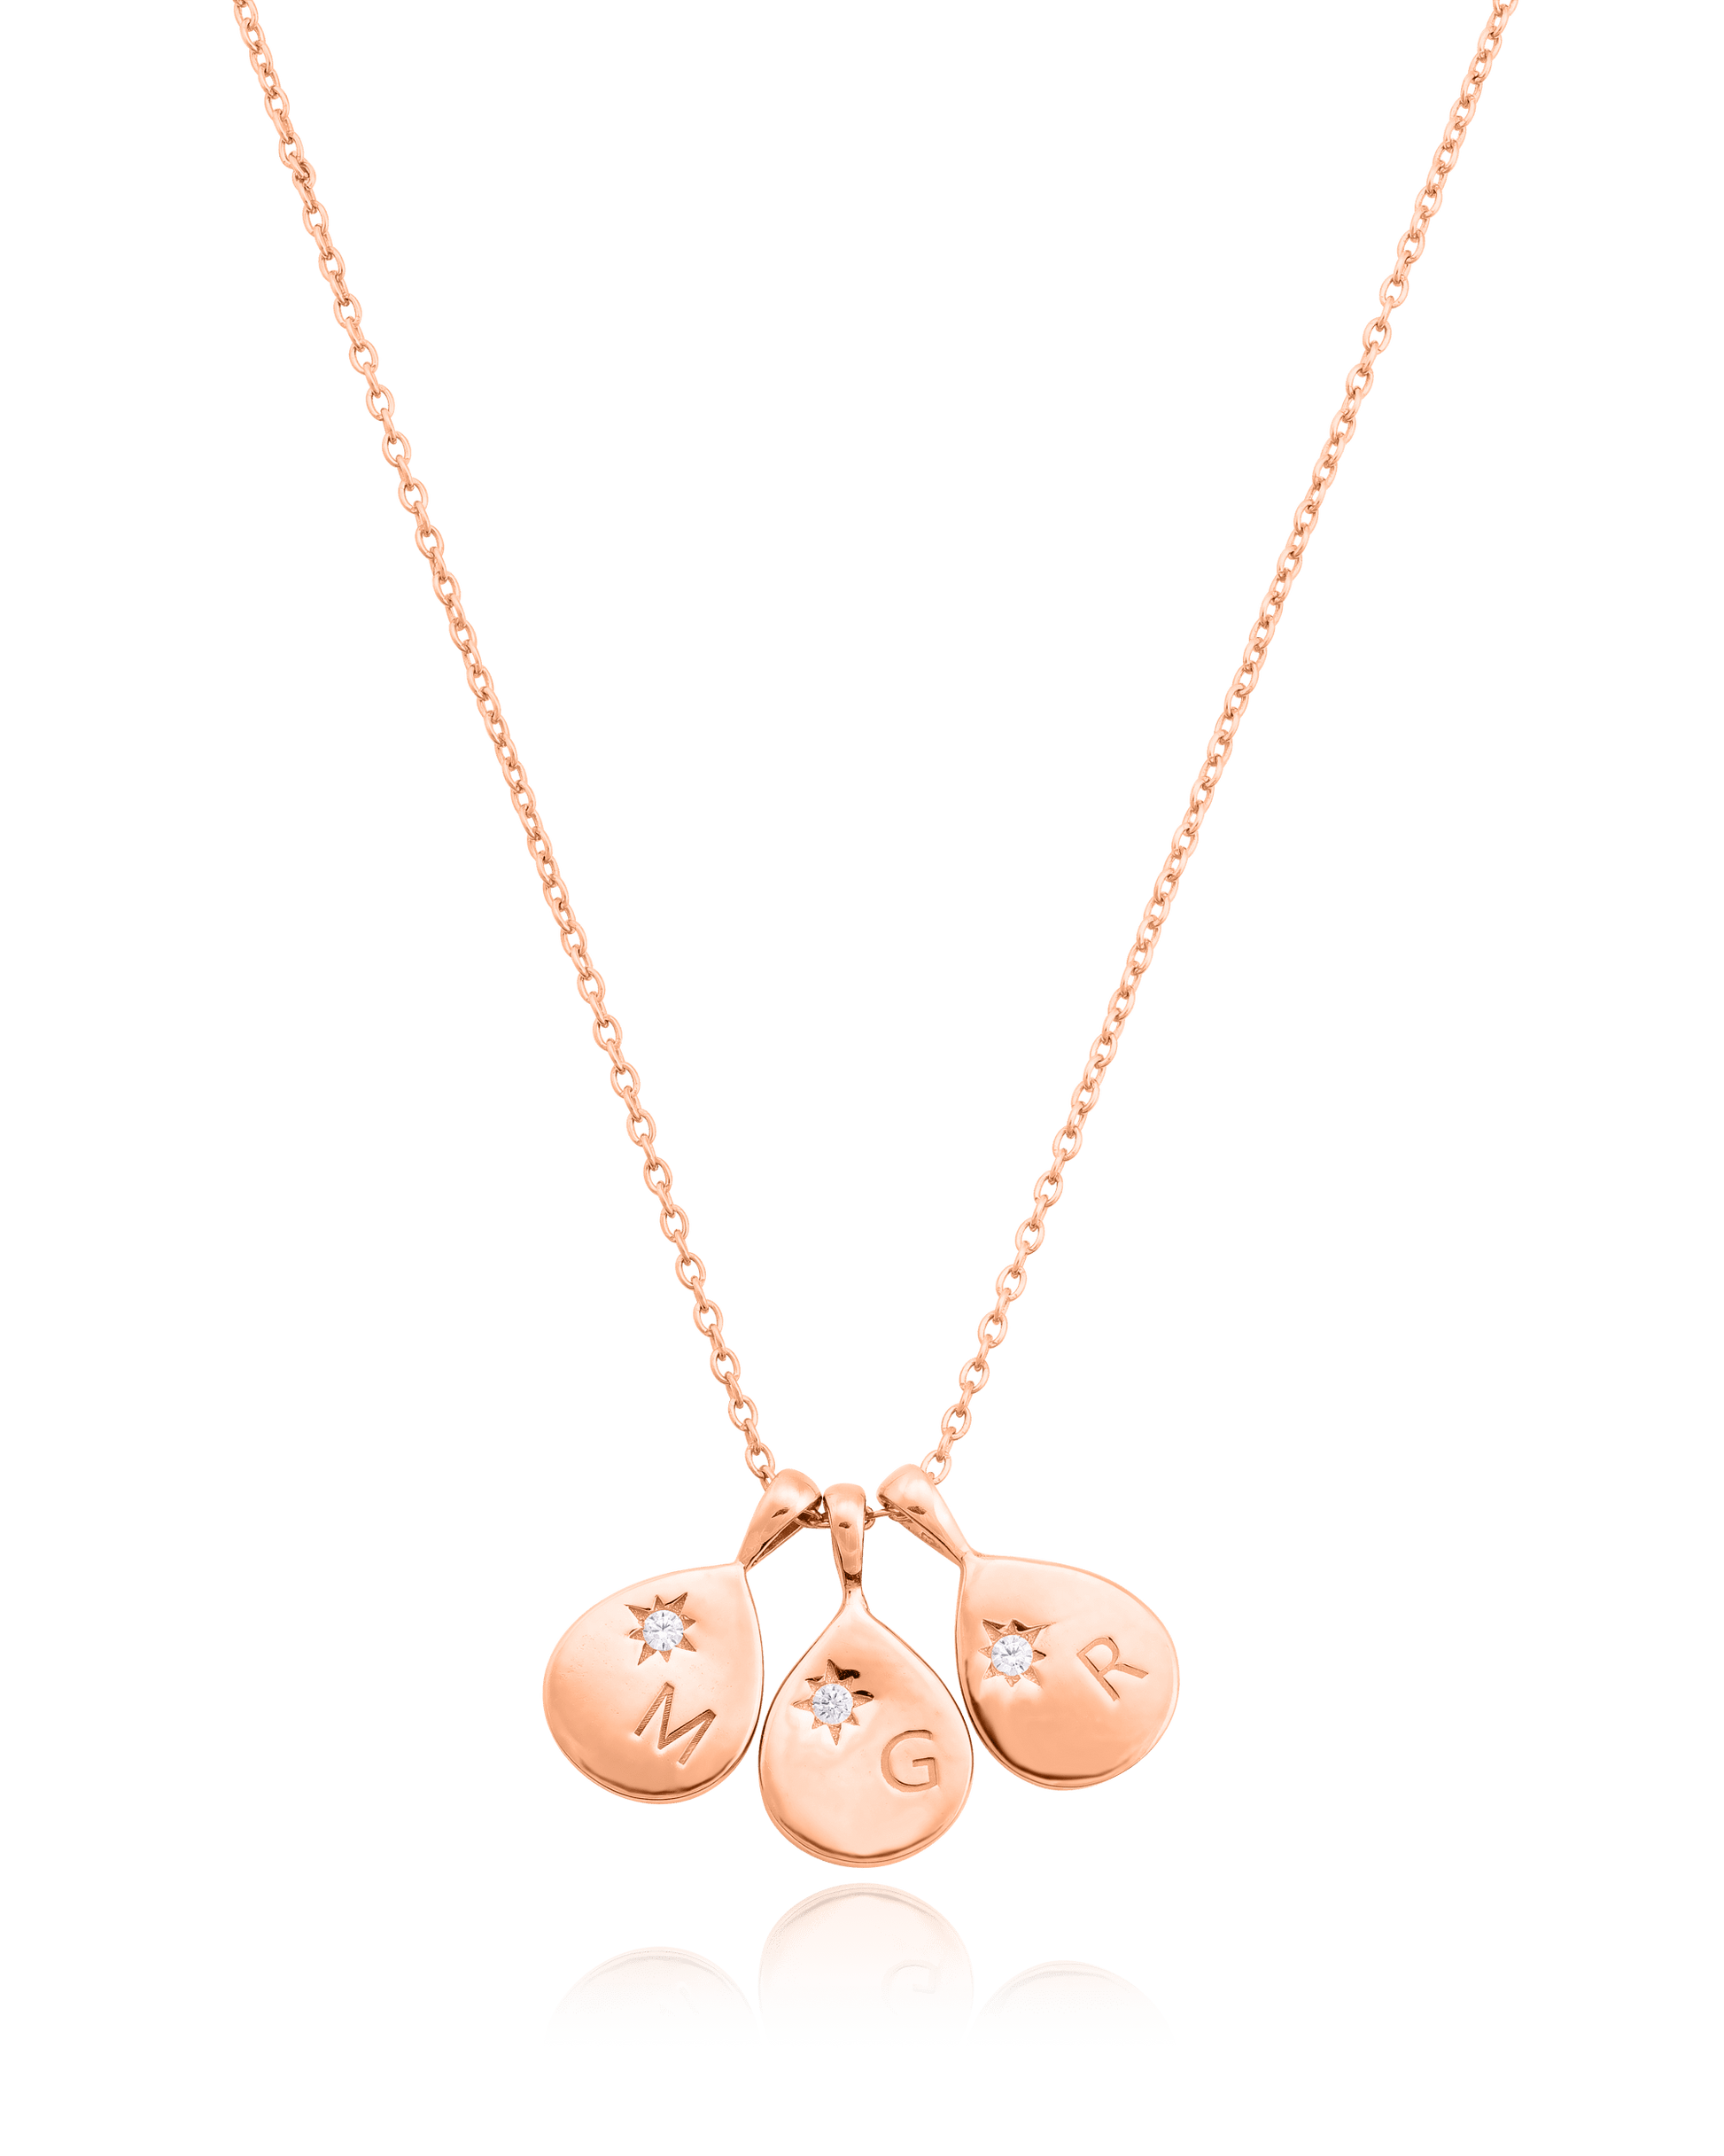 Diamond Drop Initial Necklace - 18K Rose Vermeil Necklaces magal-dev 3 Drops 16”+2” extender 